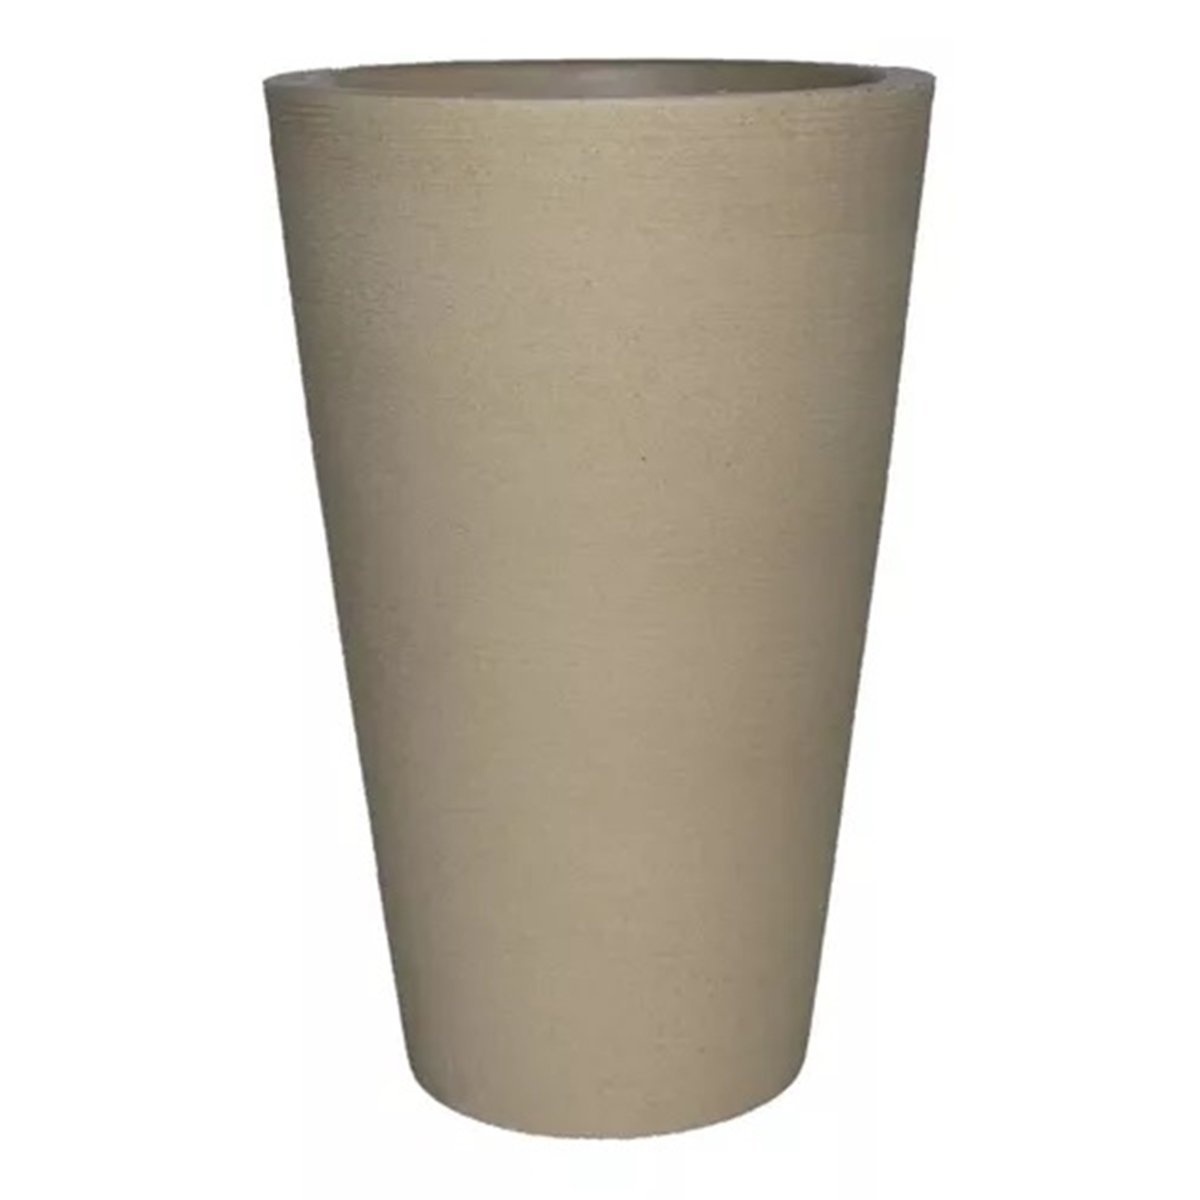 Vaso Decorativo para Plantas Coluna Redonda Cone Tamanho G:Bege - 3